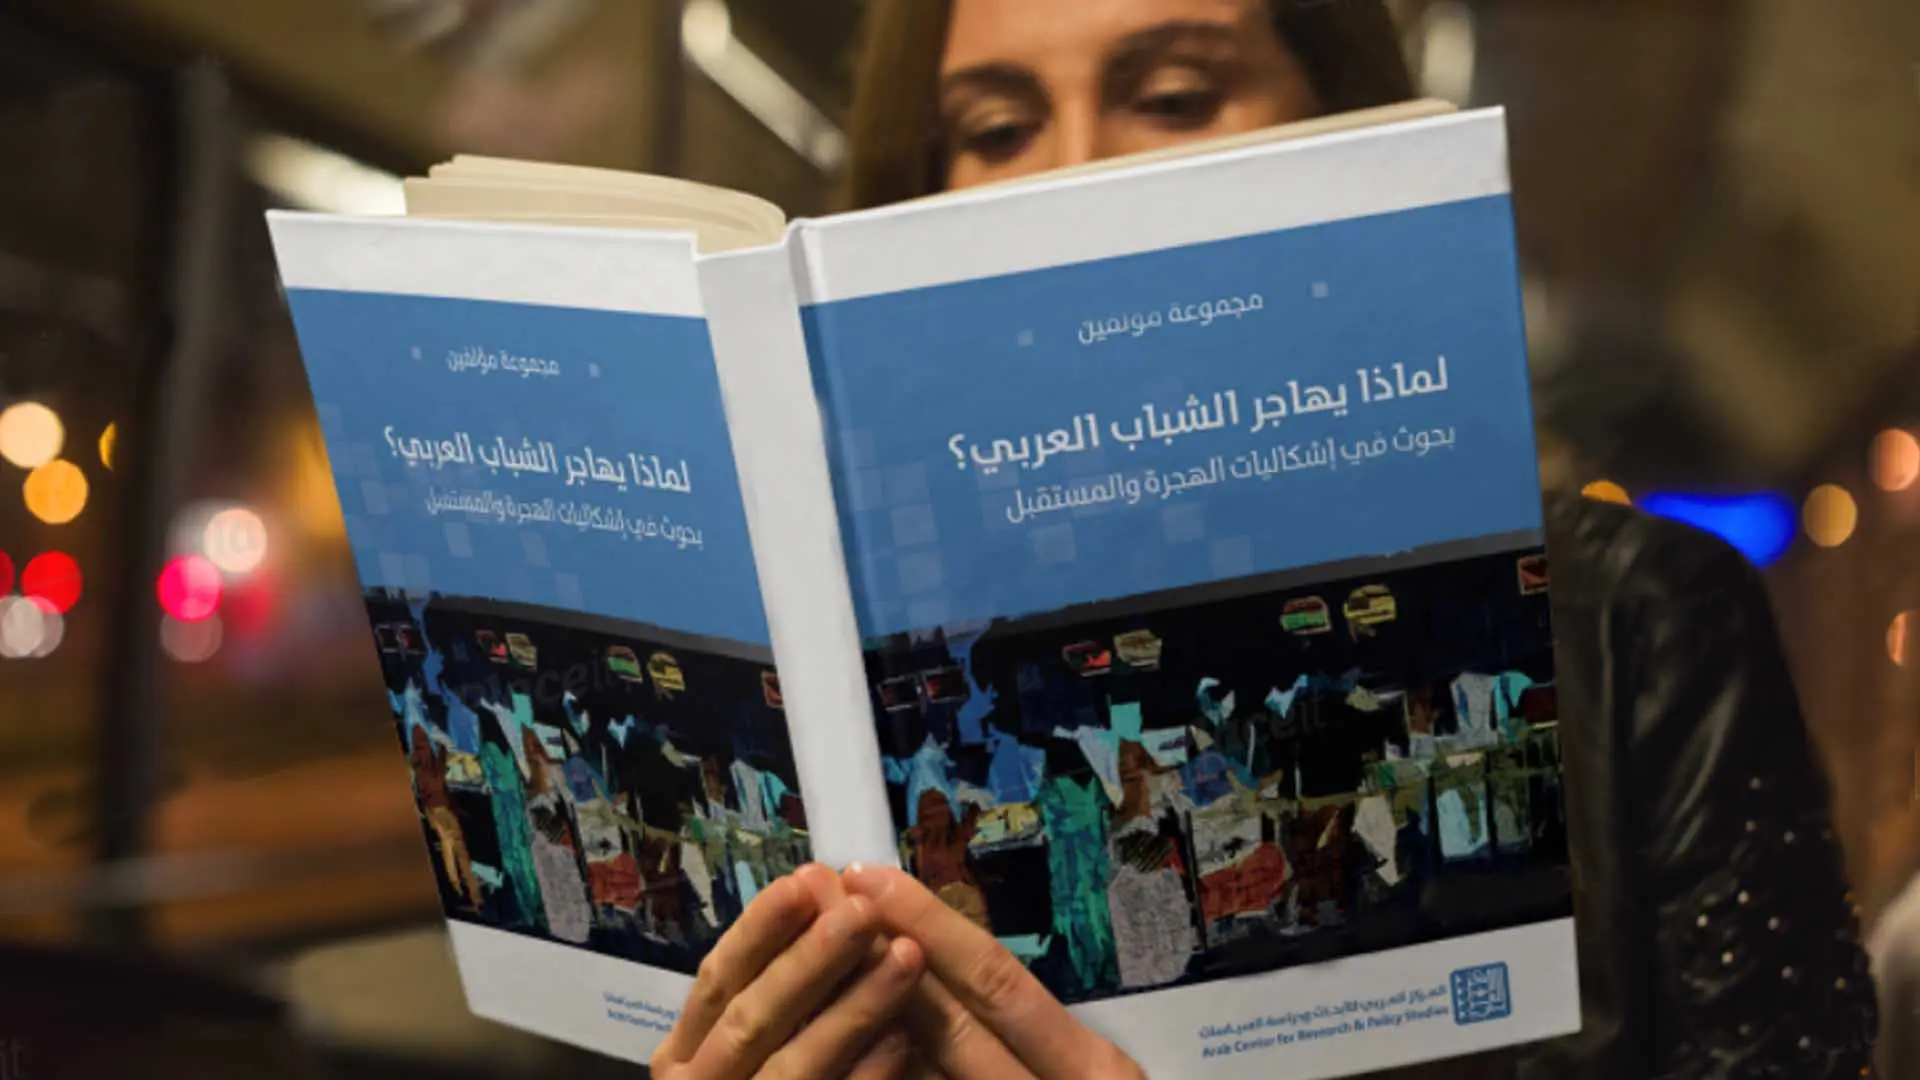 بلكندوز يصدر كتاب “المغرب خزان المواهب والكفاءات للاتحاد الأوروبي؟”